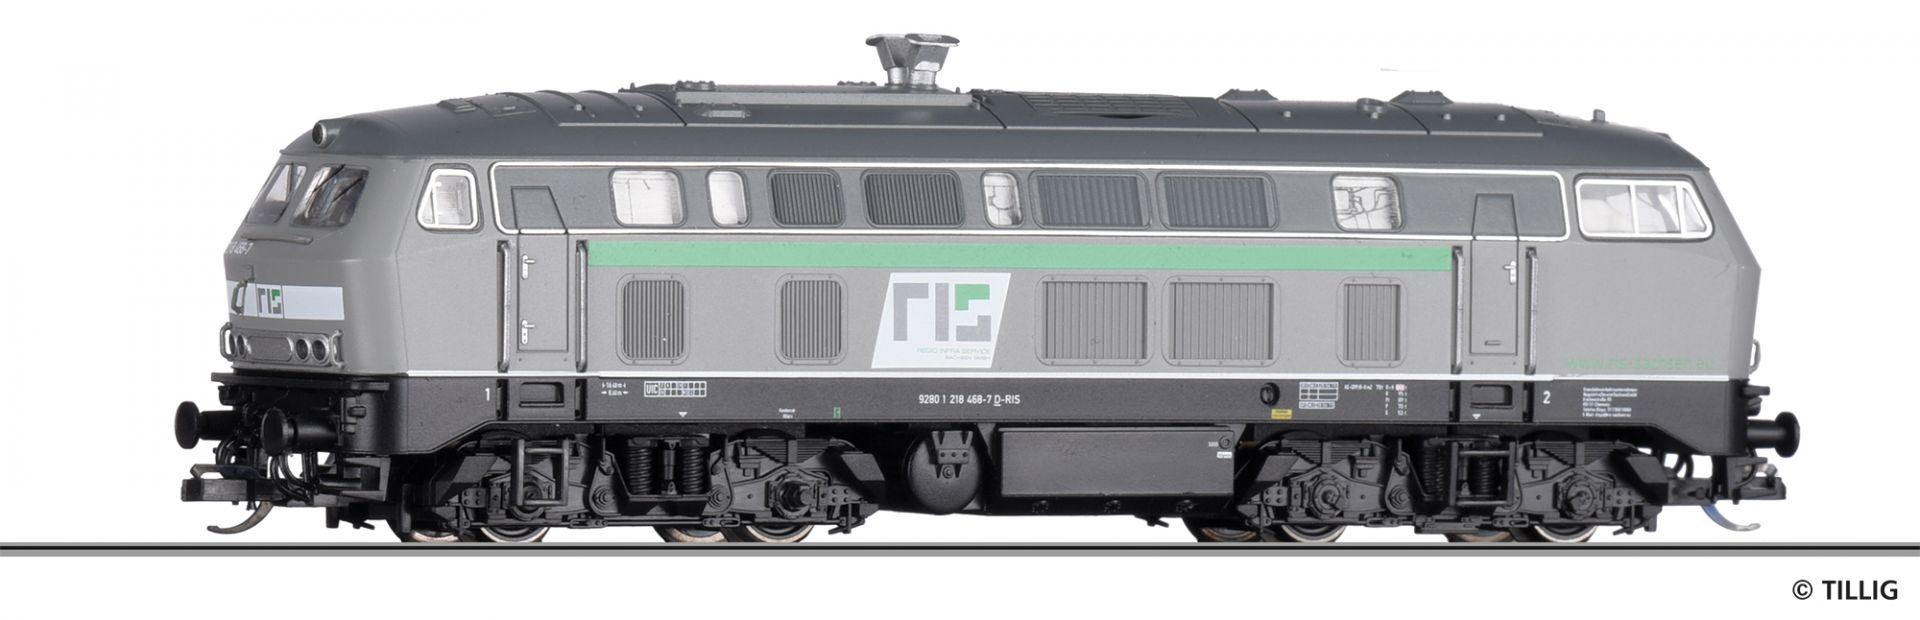 04703 | Diesellokomotive Regio Infra Sachsen GmbH -werksseitig ausverkauft-